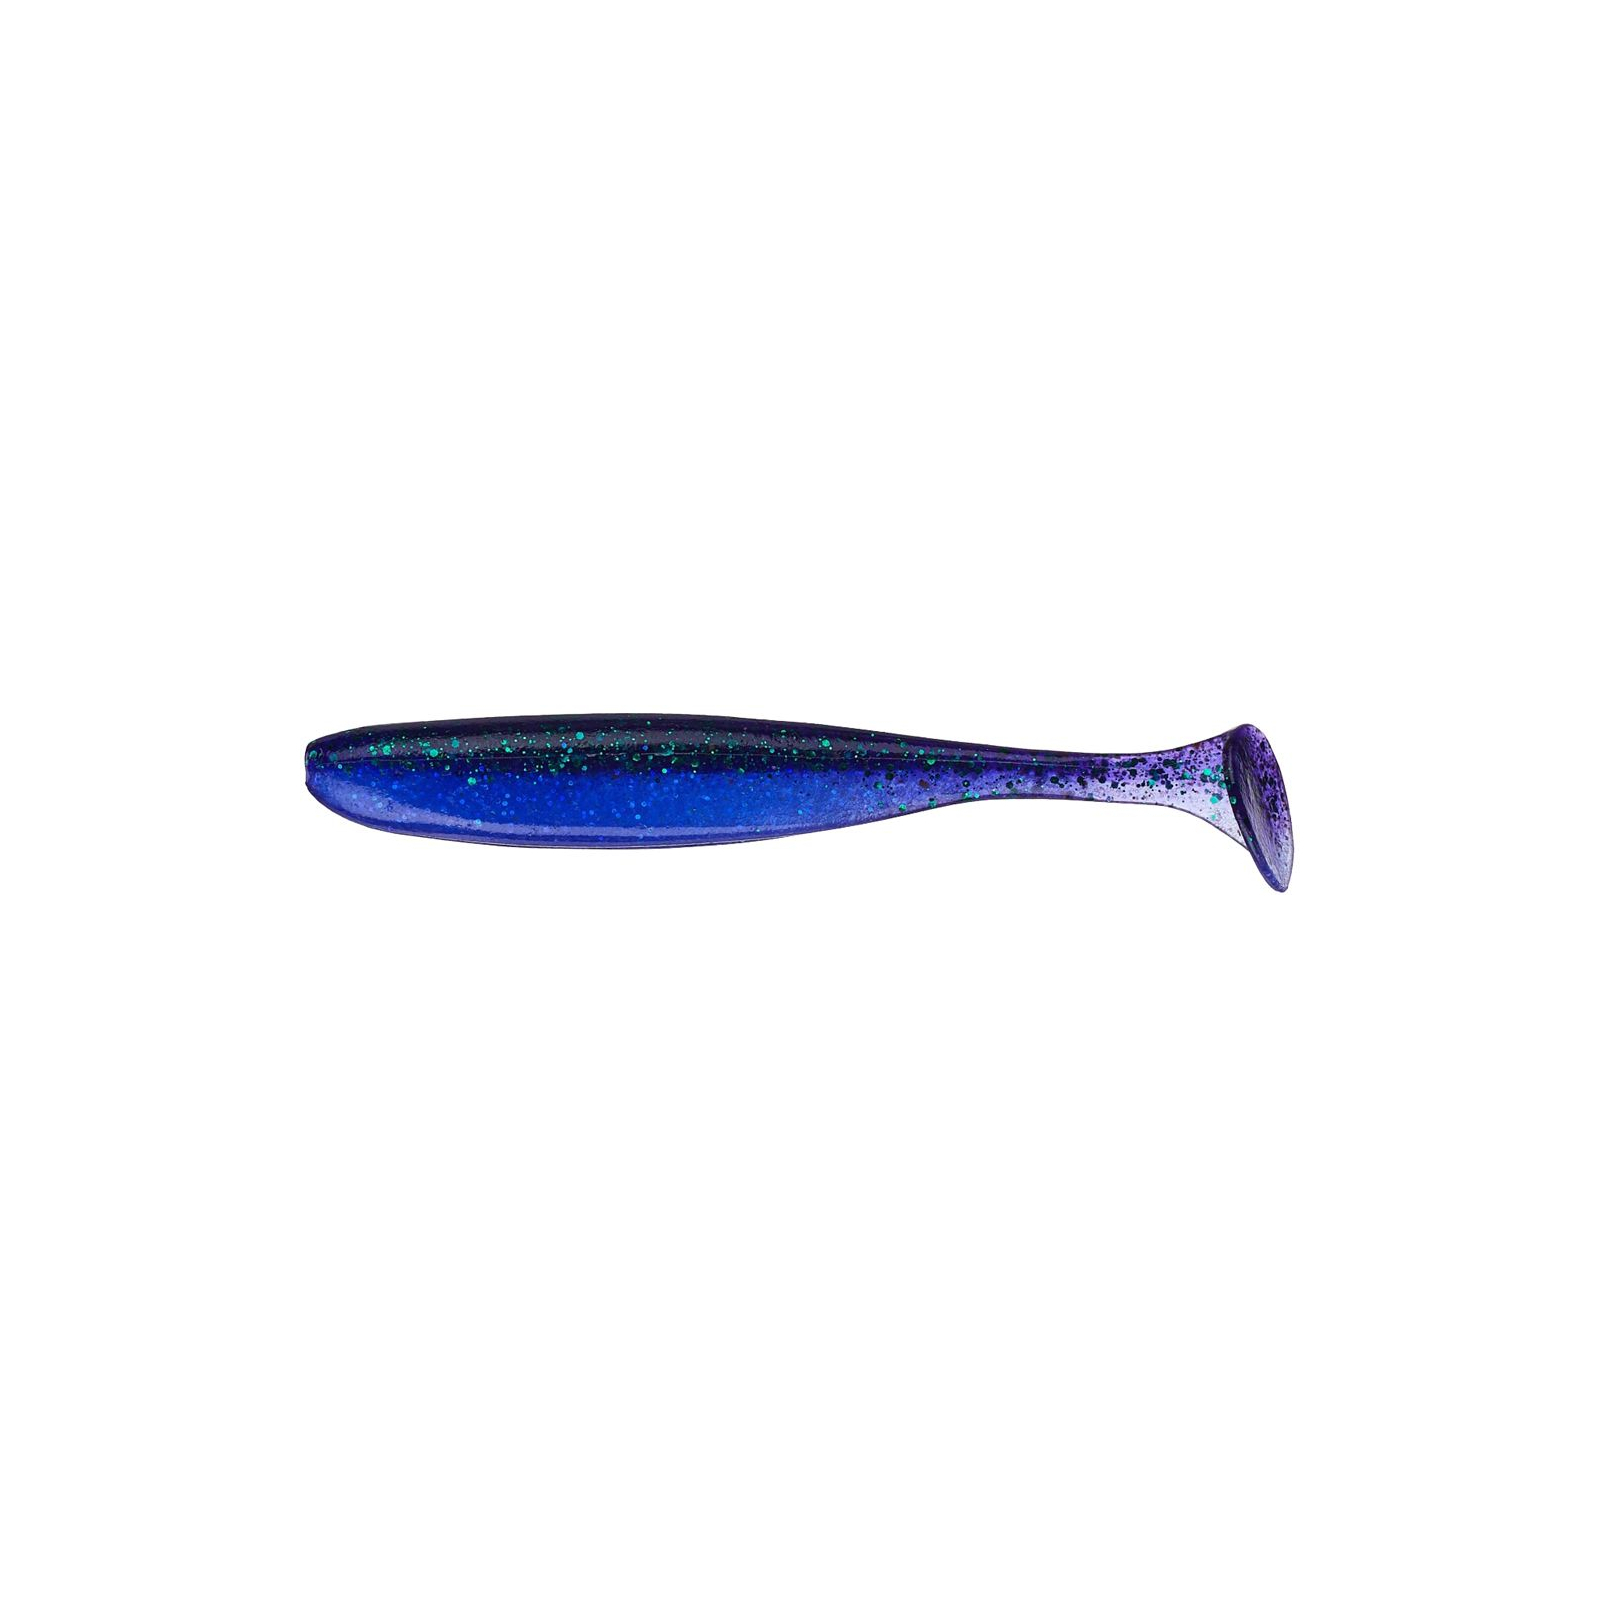 Силикон рыболовный Keitech Easy Shiner 5" (5 шт/упак) ц:408 electric june bug (1551.09.77)